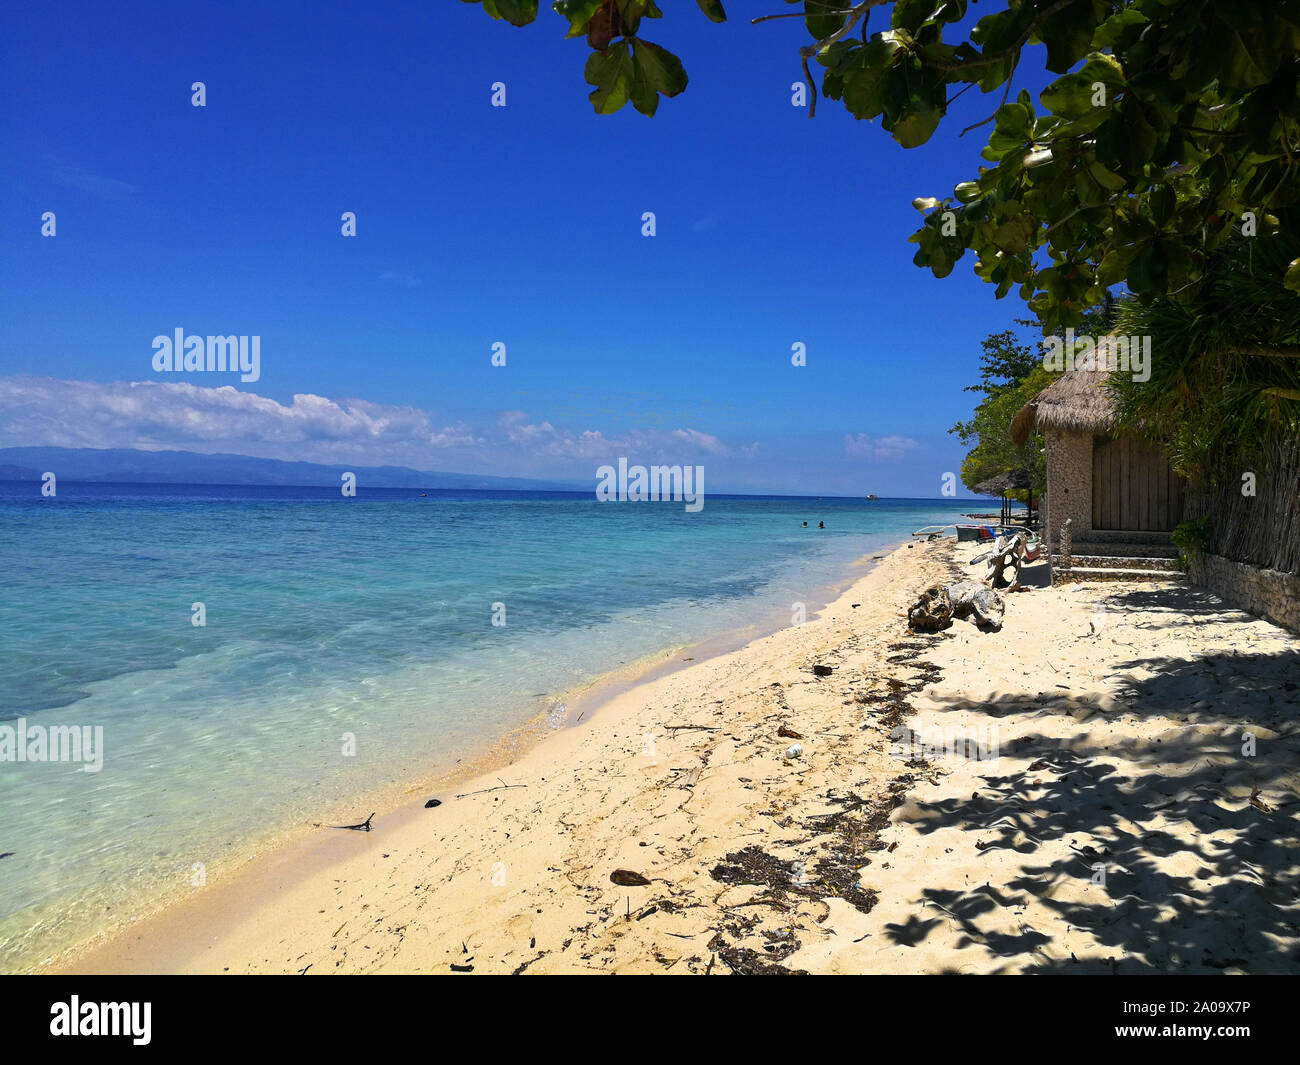 Vue sur la magnifique plage de sable blanc et l'océan turquoise à Moalboal, Cebu, Philippines Banque D'Images